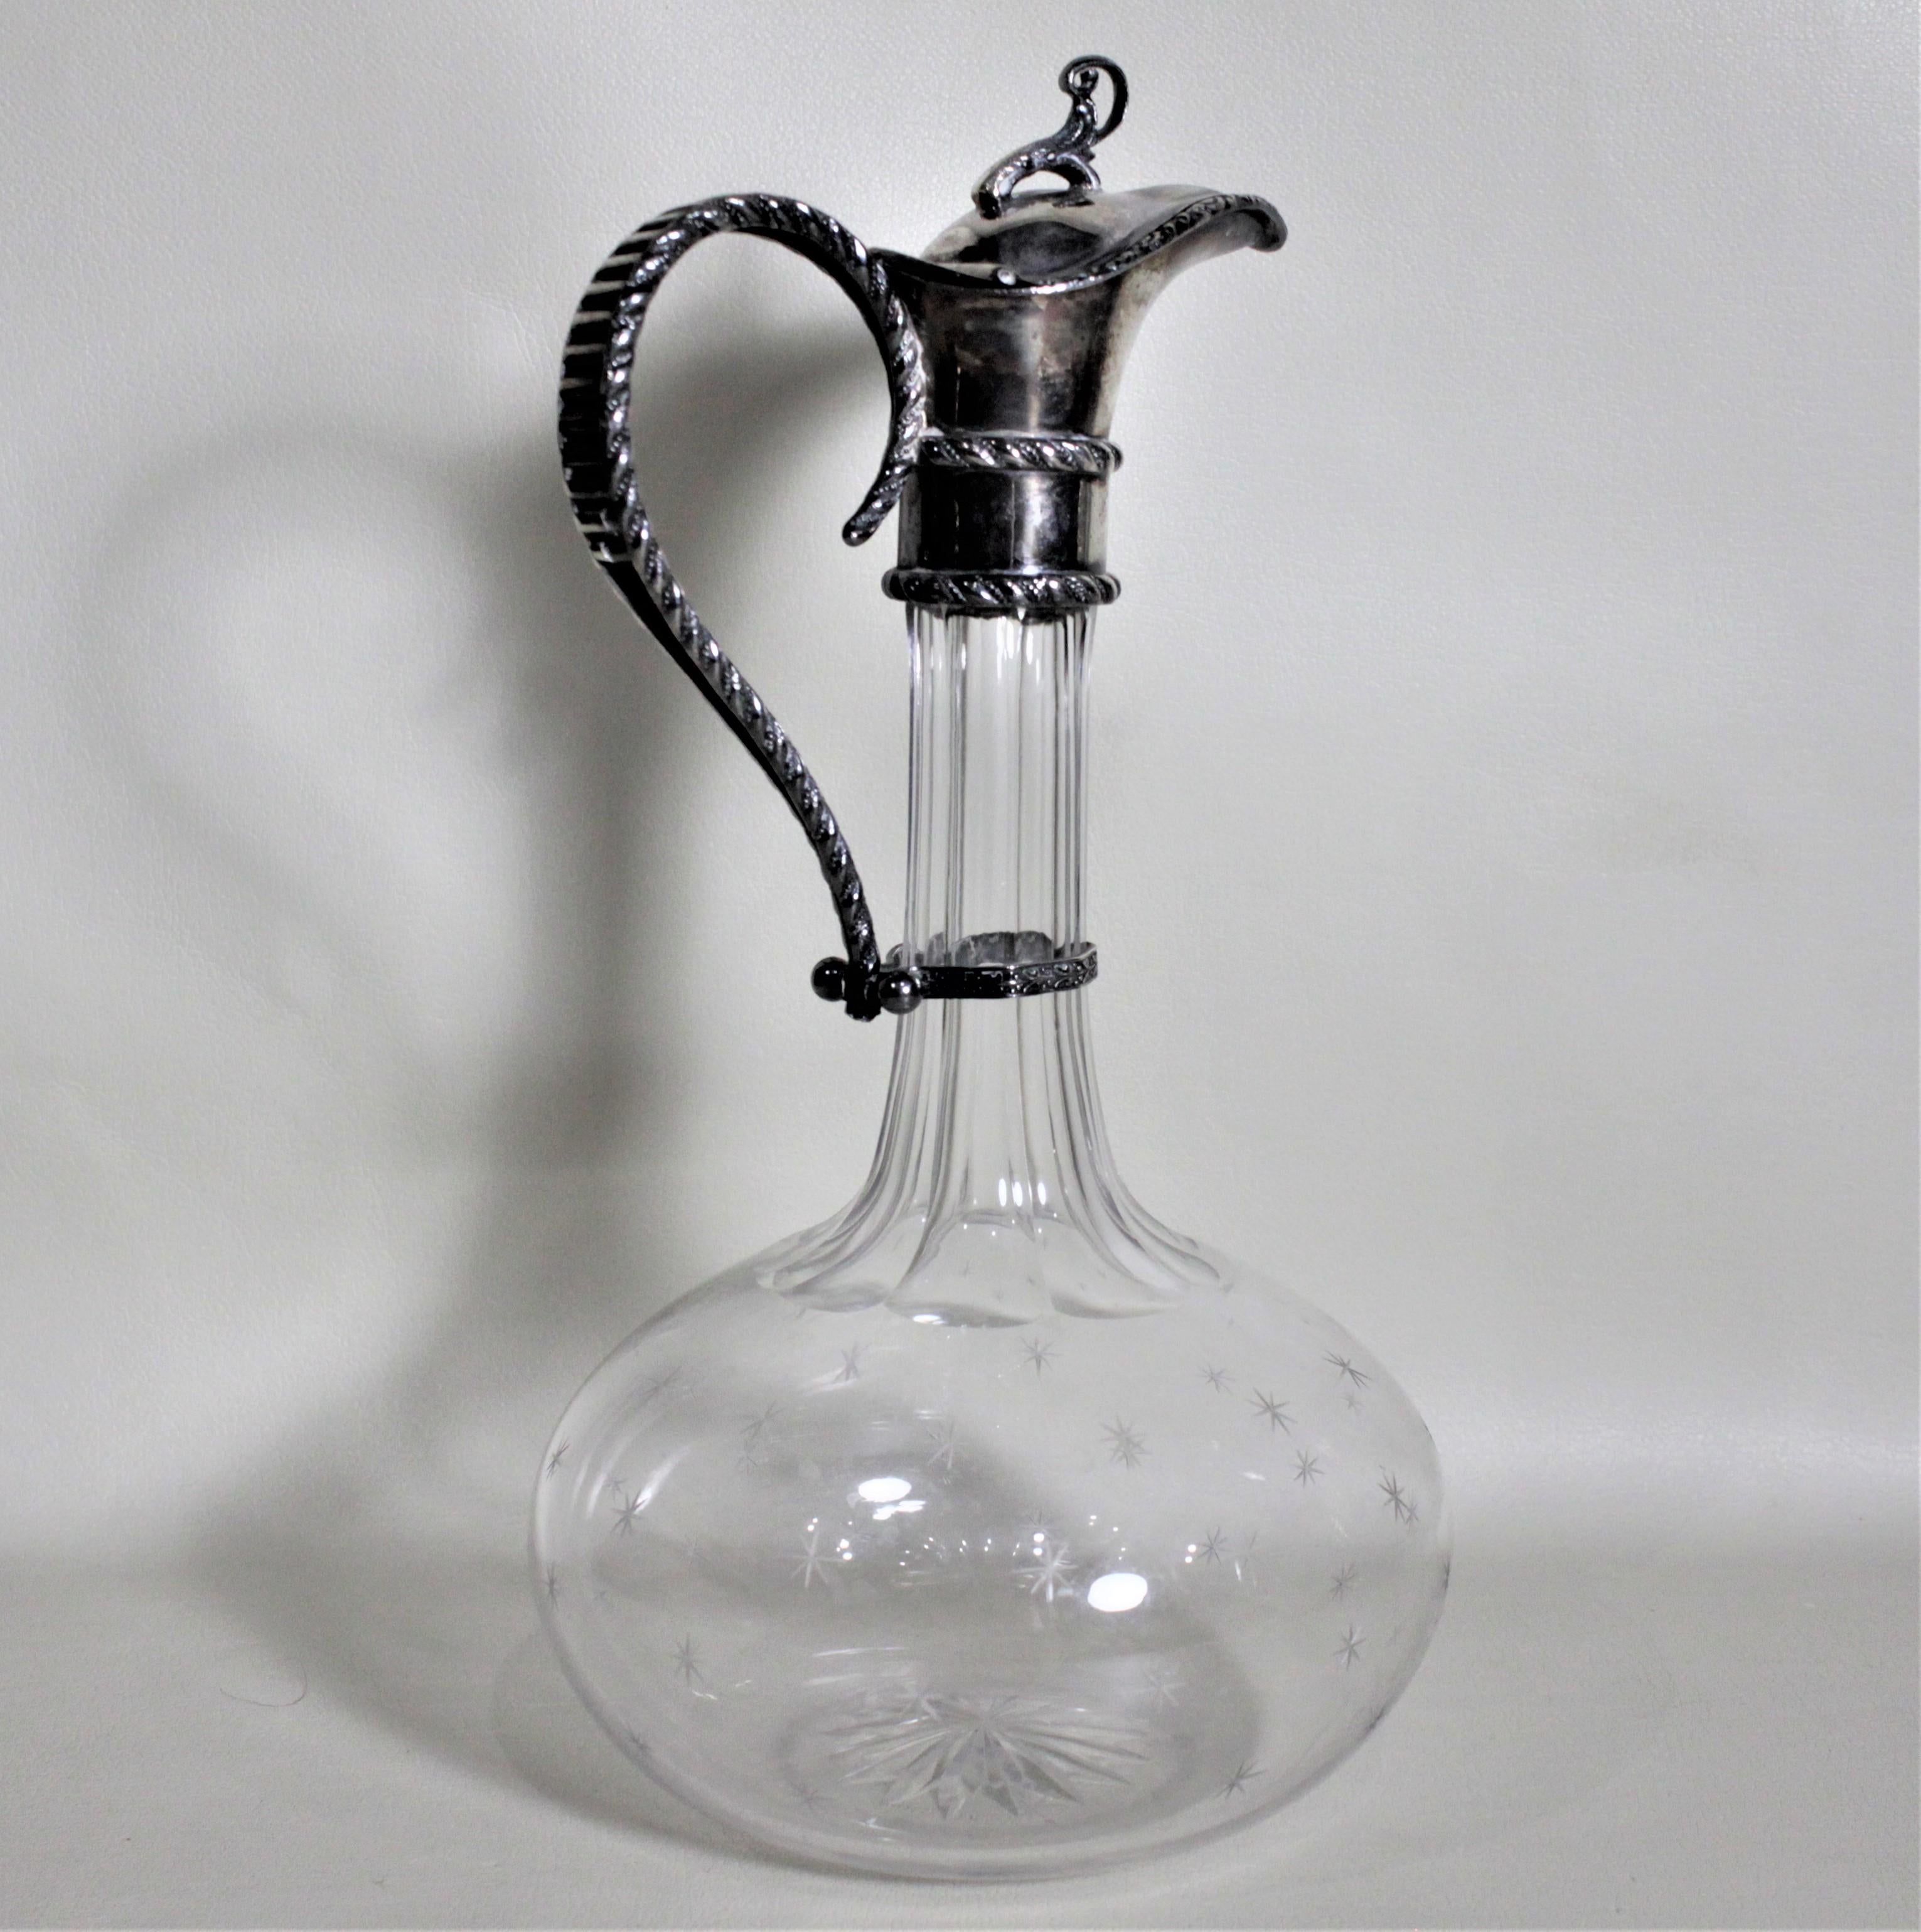 Dieser antike Weinkrug aus Silberblech und geschliffenem Glas wurde wahrscheinlich um 1900 in England im viktorianischen Stil hergestellt. Der Krug hat einen einfachen, mit einer Schleife versehenen Abschluss auf dem Deckel des tief gedrehten